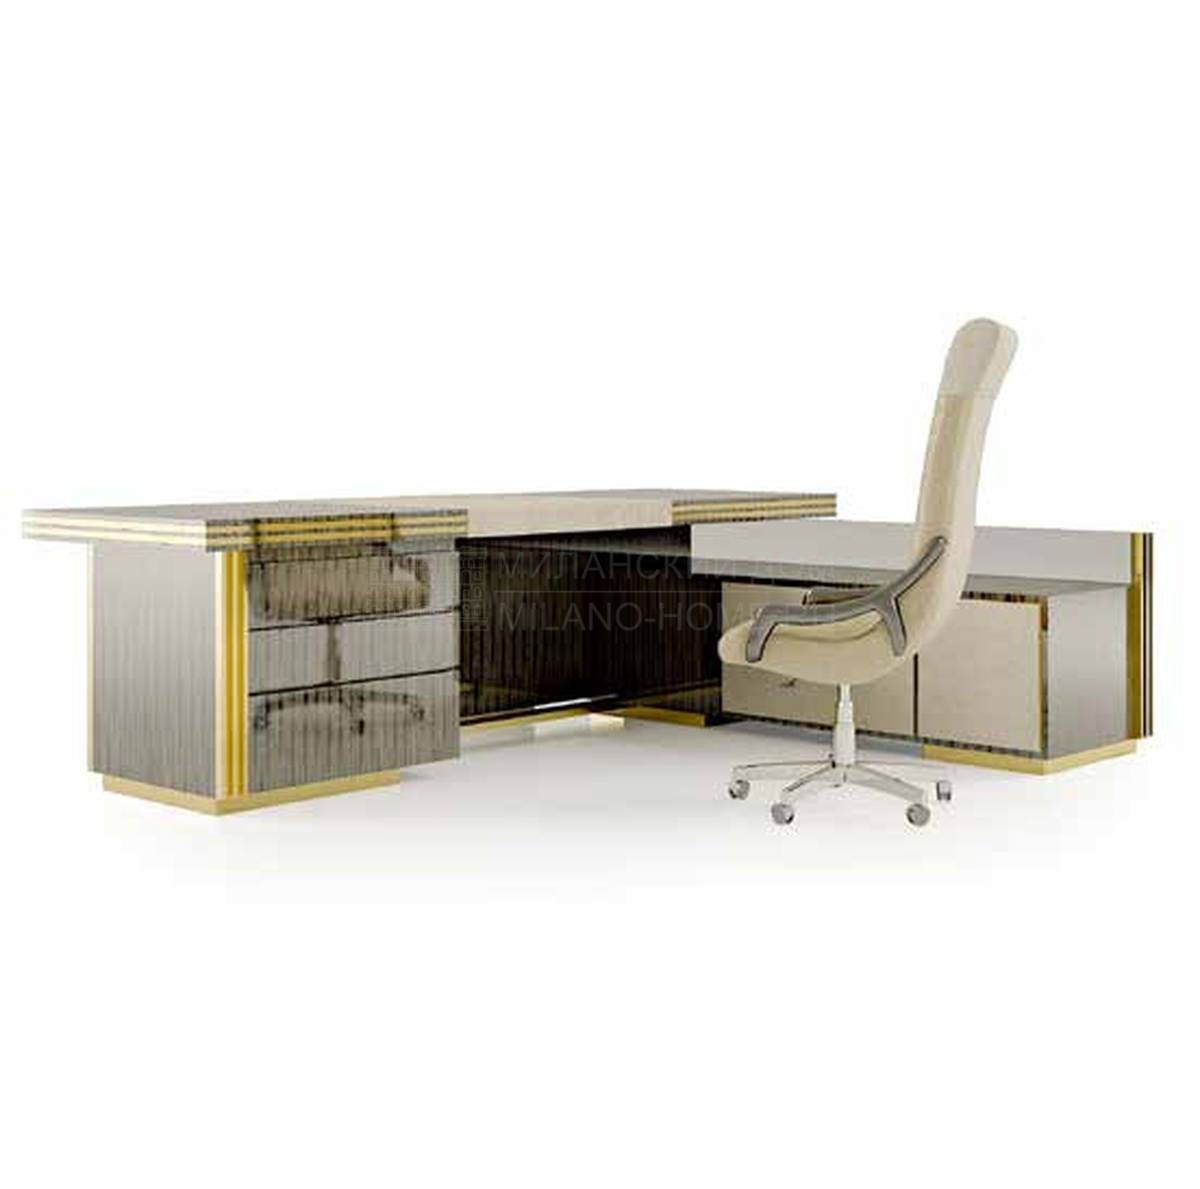 Письменный стол Infiniti desk / art.155 из Италии фабрики BIZZOTTO